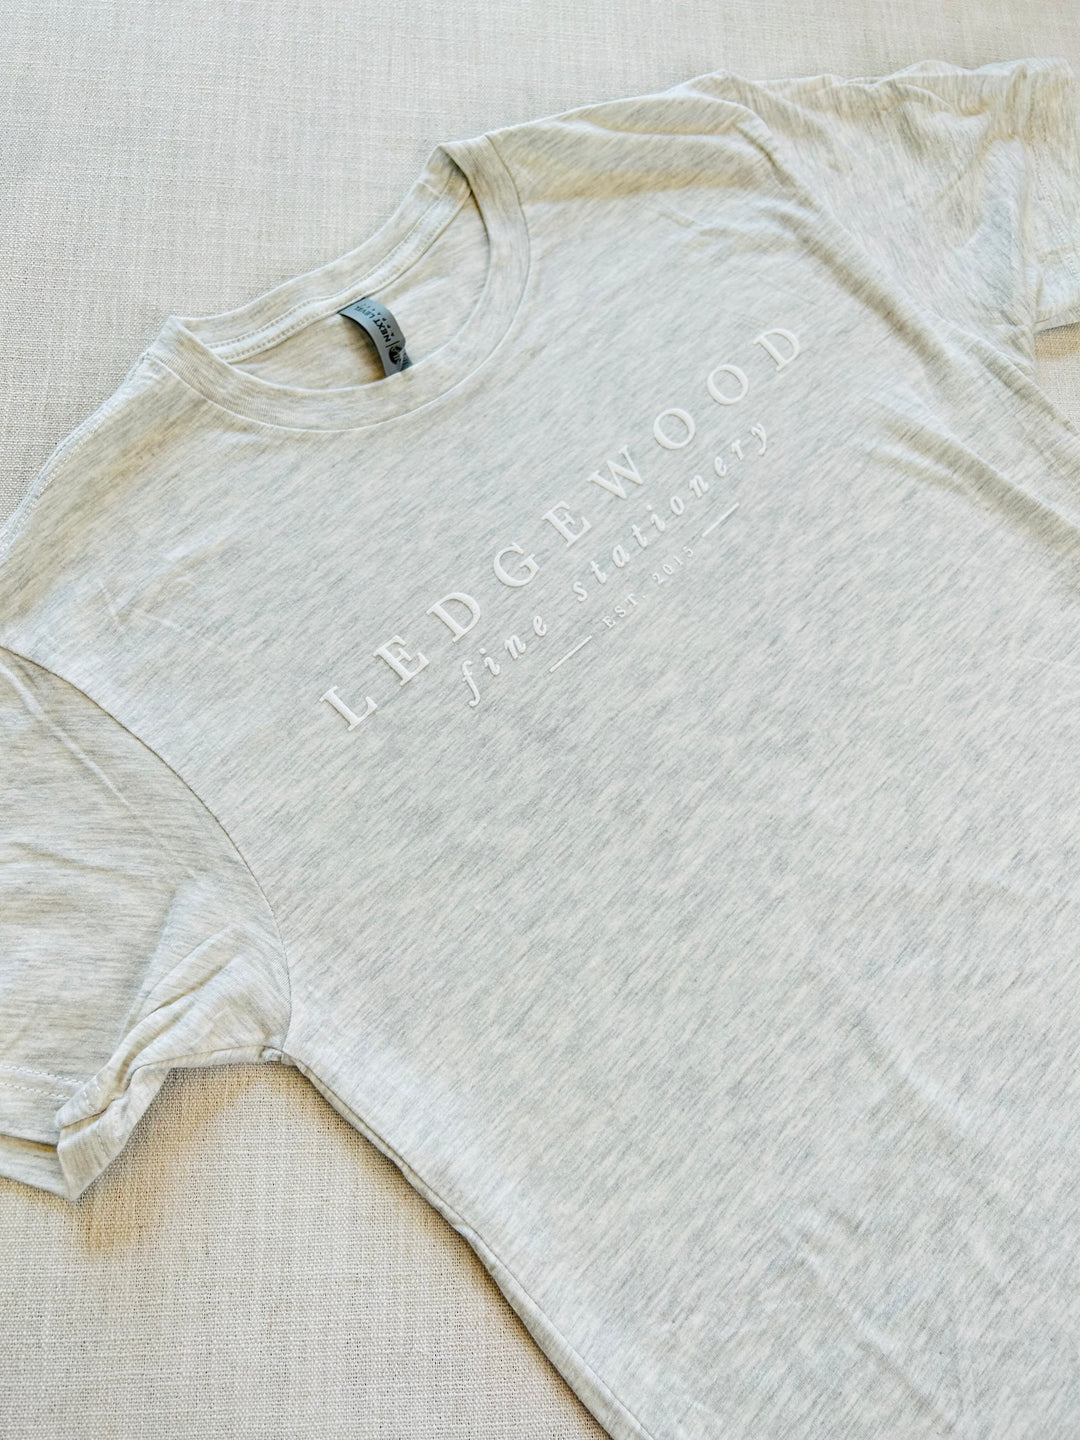 Ledgewood Fine Stationery T-Shirt